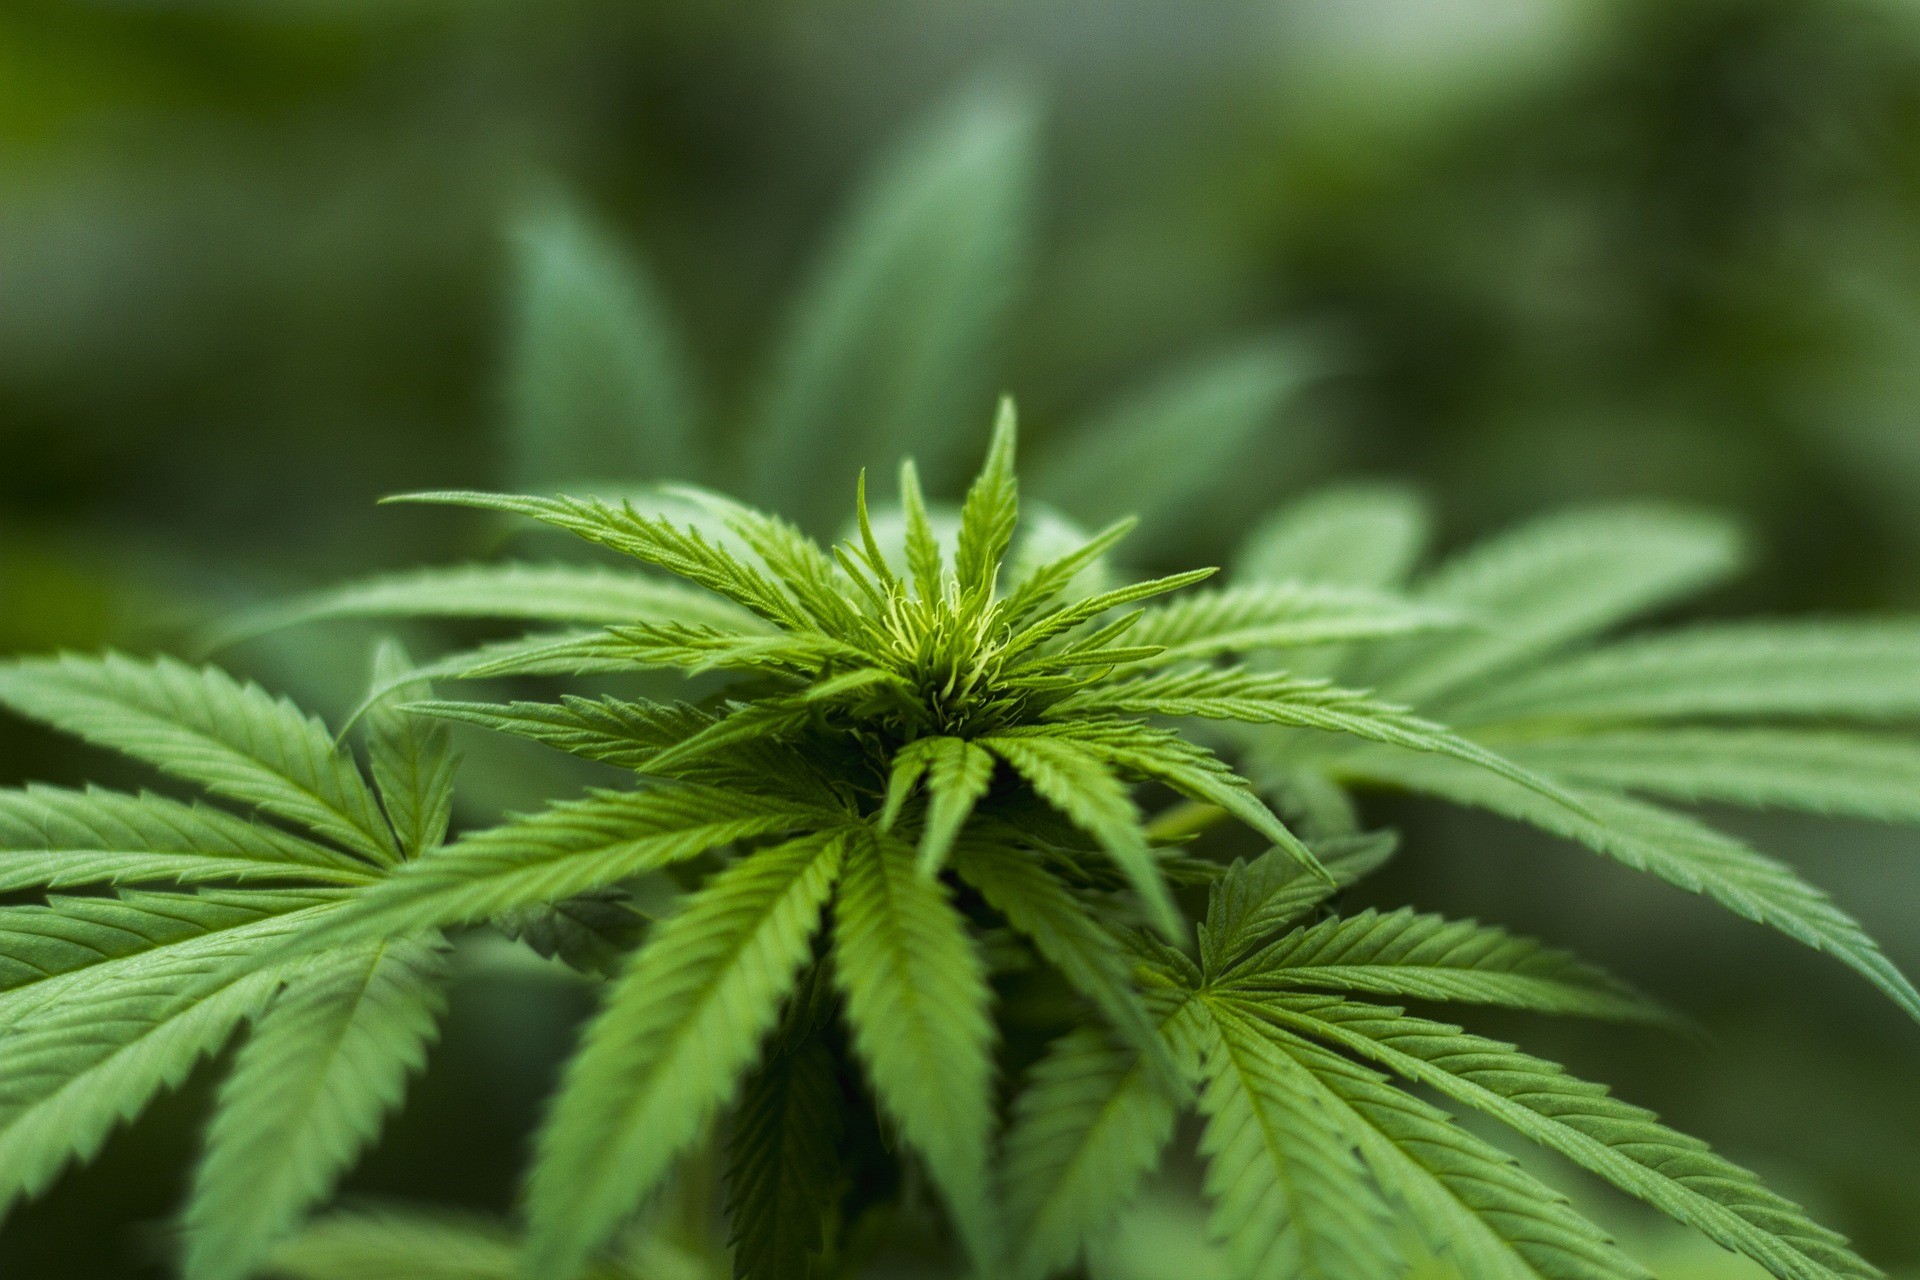 Bara en av tio amerikaner säger att marijuana borde vara olagligt, enligt en ny undersökning från Pew Research Center. Undersökningen, som publicerades på tisdagen, fann att en "överväldigande andel av amerikanska vuxna" (89 procent) anser att cannabis borde vara lagligt för antingen medicinska eller rekreationsändamål. Bland dessa säger 59 procent att det borde vara lagligt för båda och 30 procent vill endast tillåta medicinsk användning.